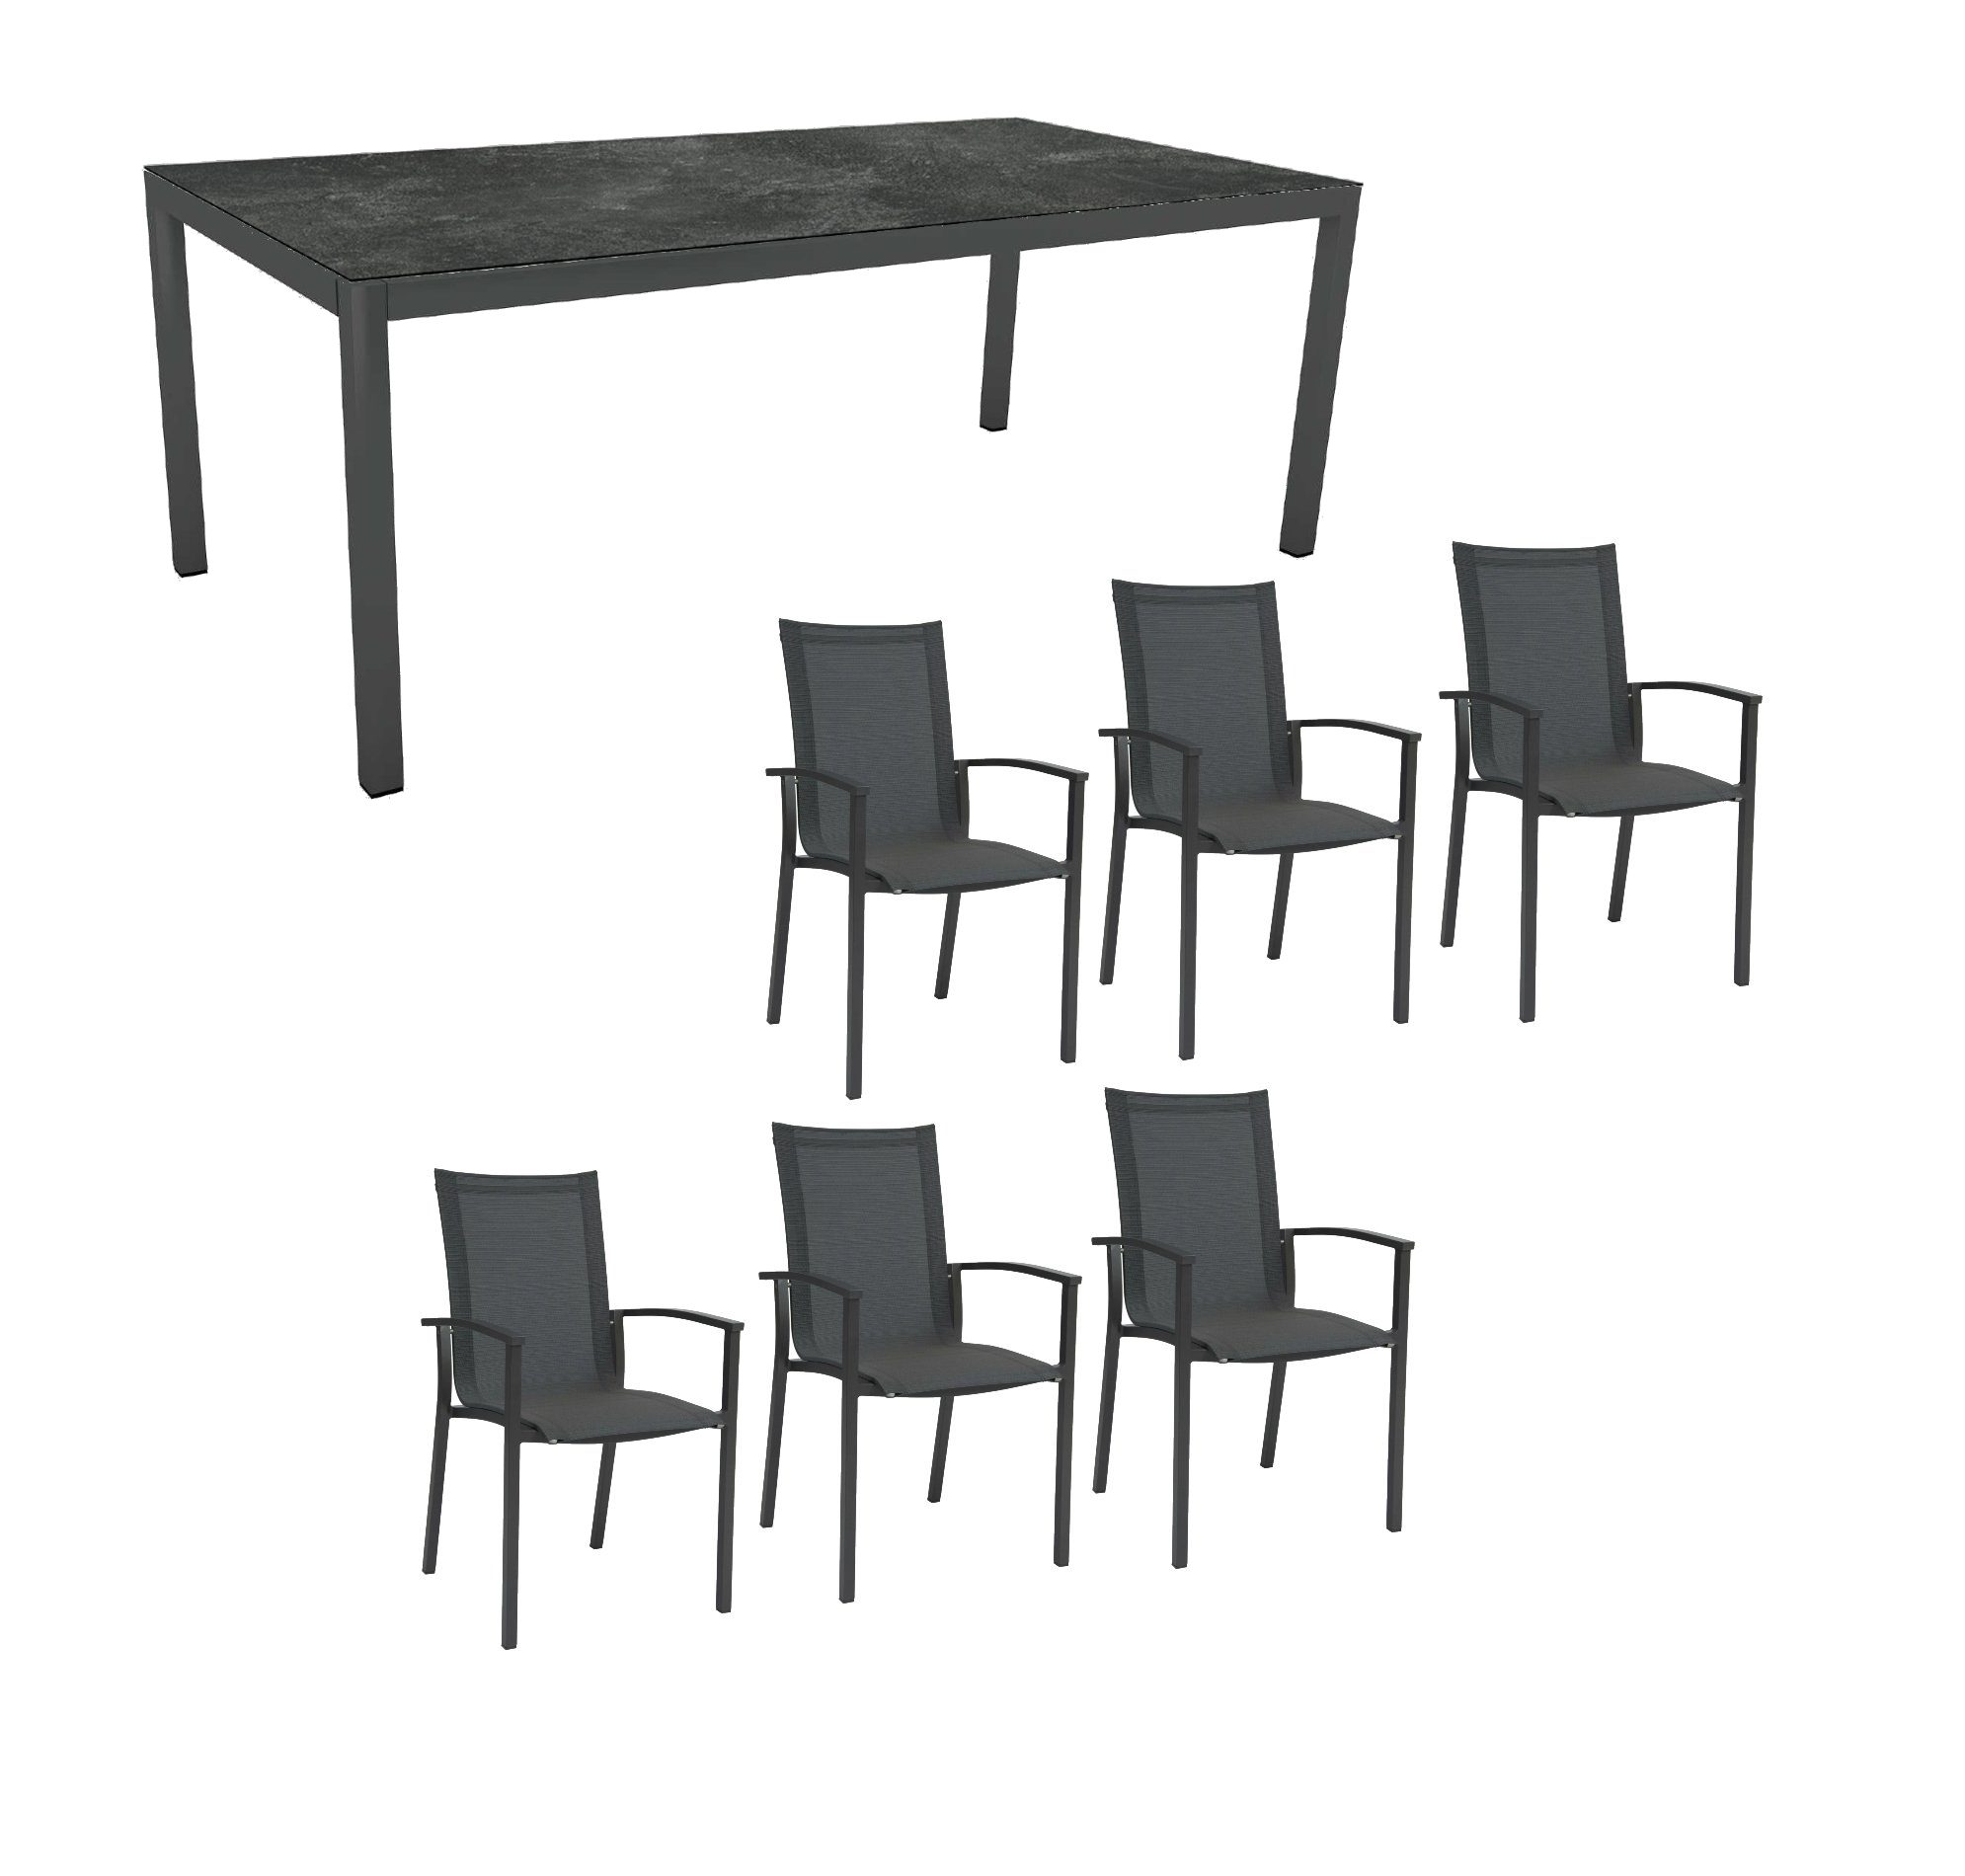 Stern Gartenmöbel-Set "Evoee", Gestelle Aluminium anthrazit, Tischplatte HPL Slate, Sitz- und Rückenfläche Textilgewebe karbon, Armlehnen anthrazit